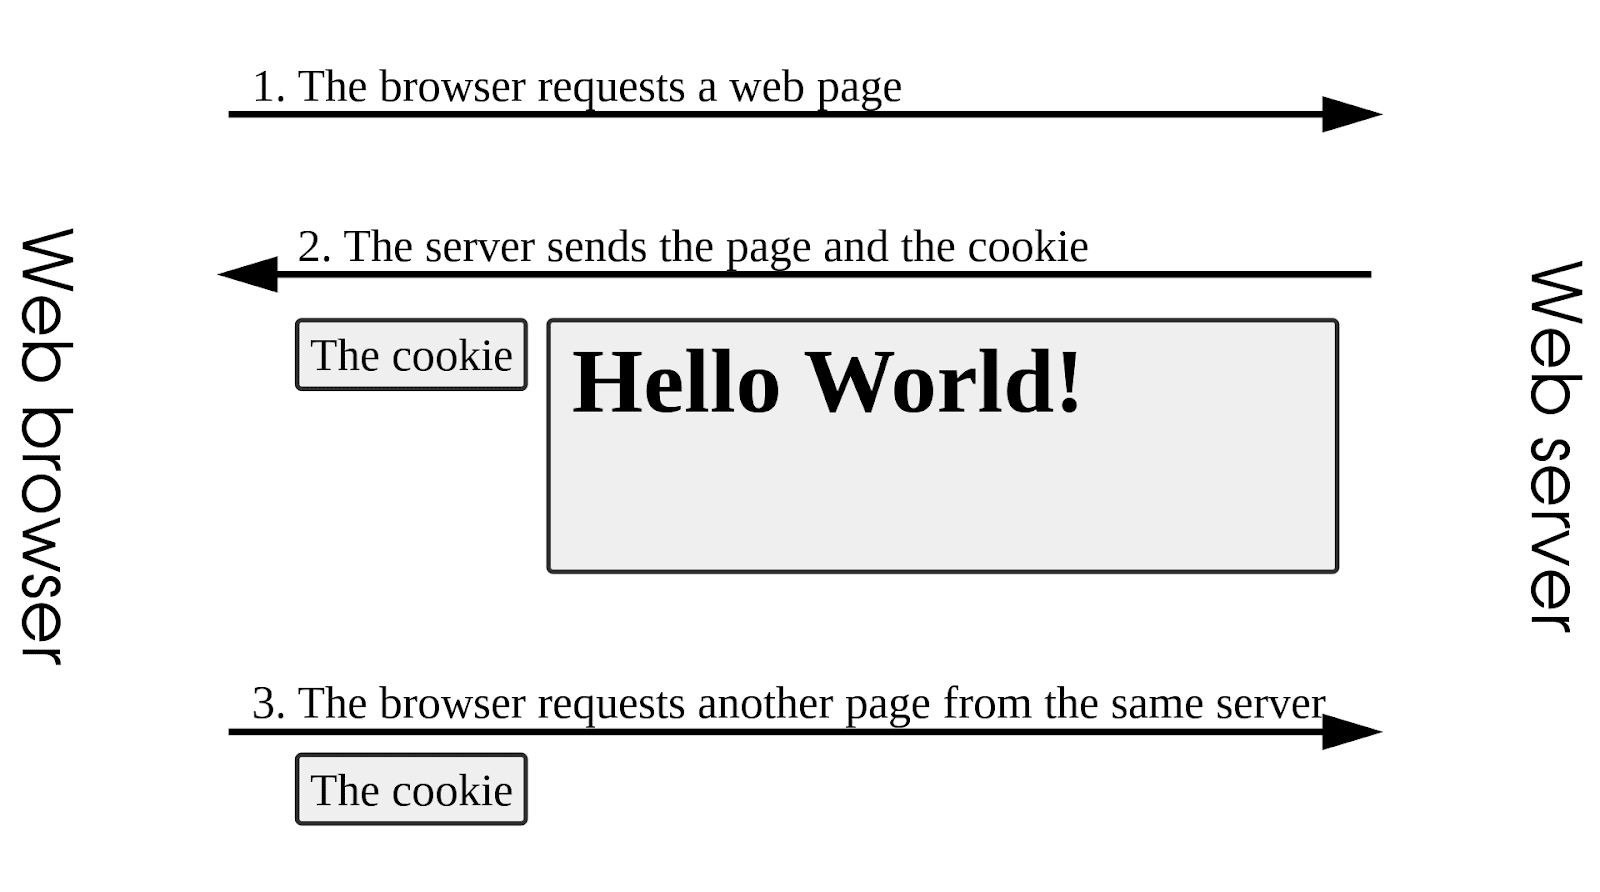 Cómo envían los sitios web las cookies HTTP a los navegadores de los usuarios